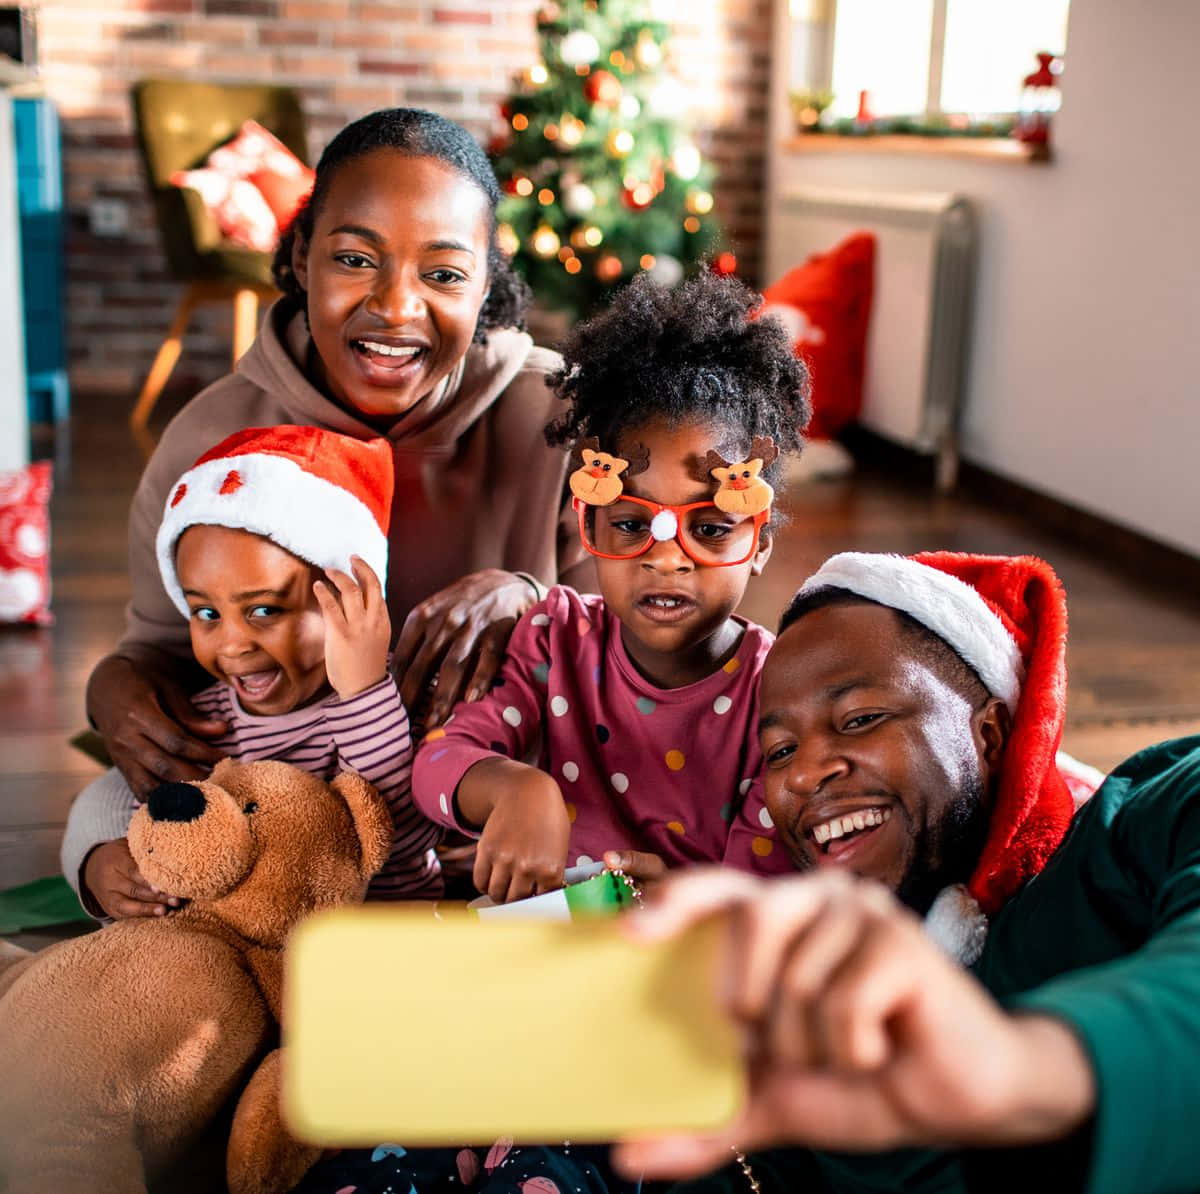 Imagende La Familia Negra En Navidad Tomándose Un Selfie